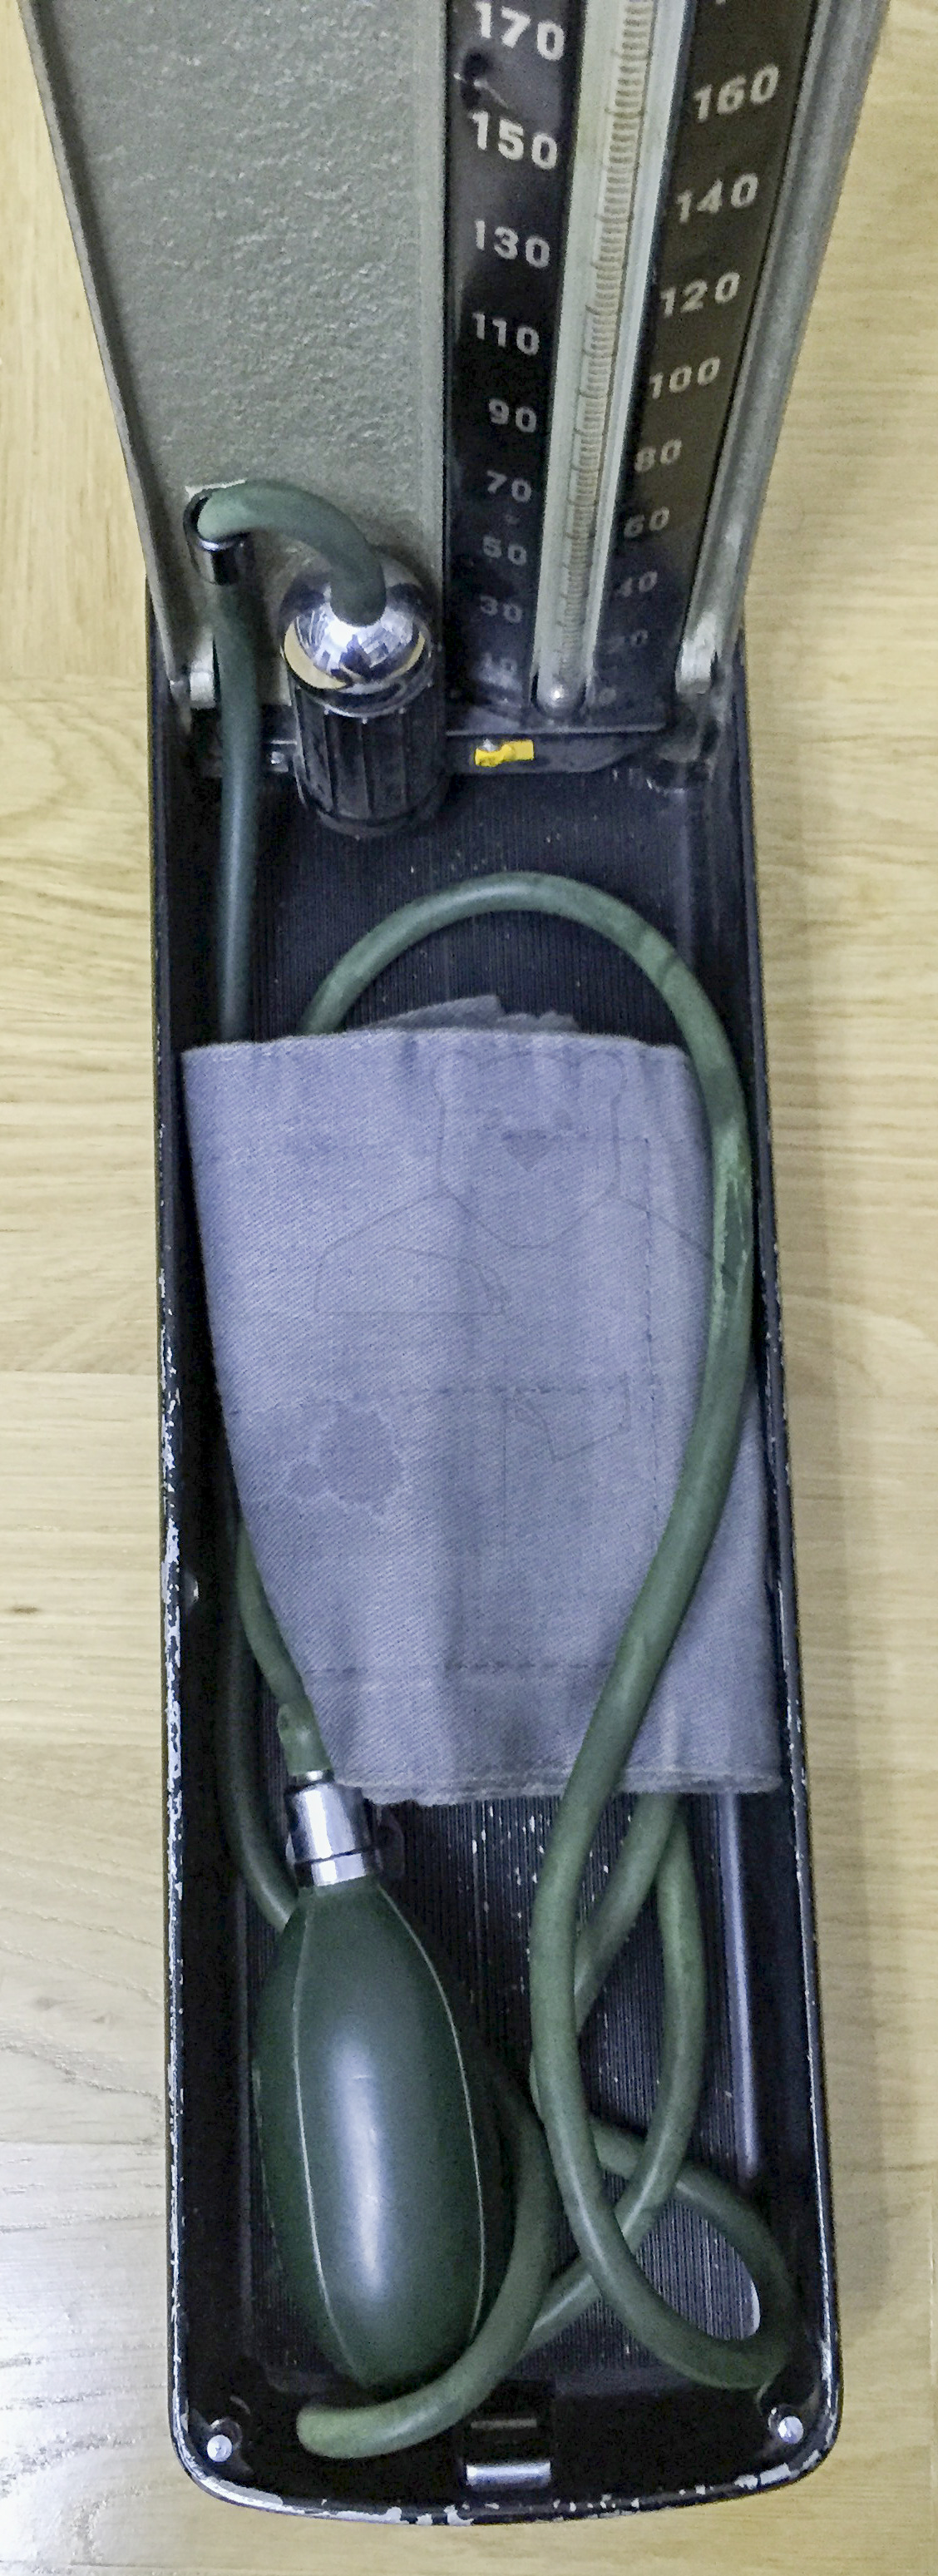 Erka 300 Blutdruckmesser (Sphygmomanometer), Originalzustand, 1960'er Jahre, Manschette und Gebläseball